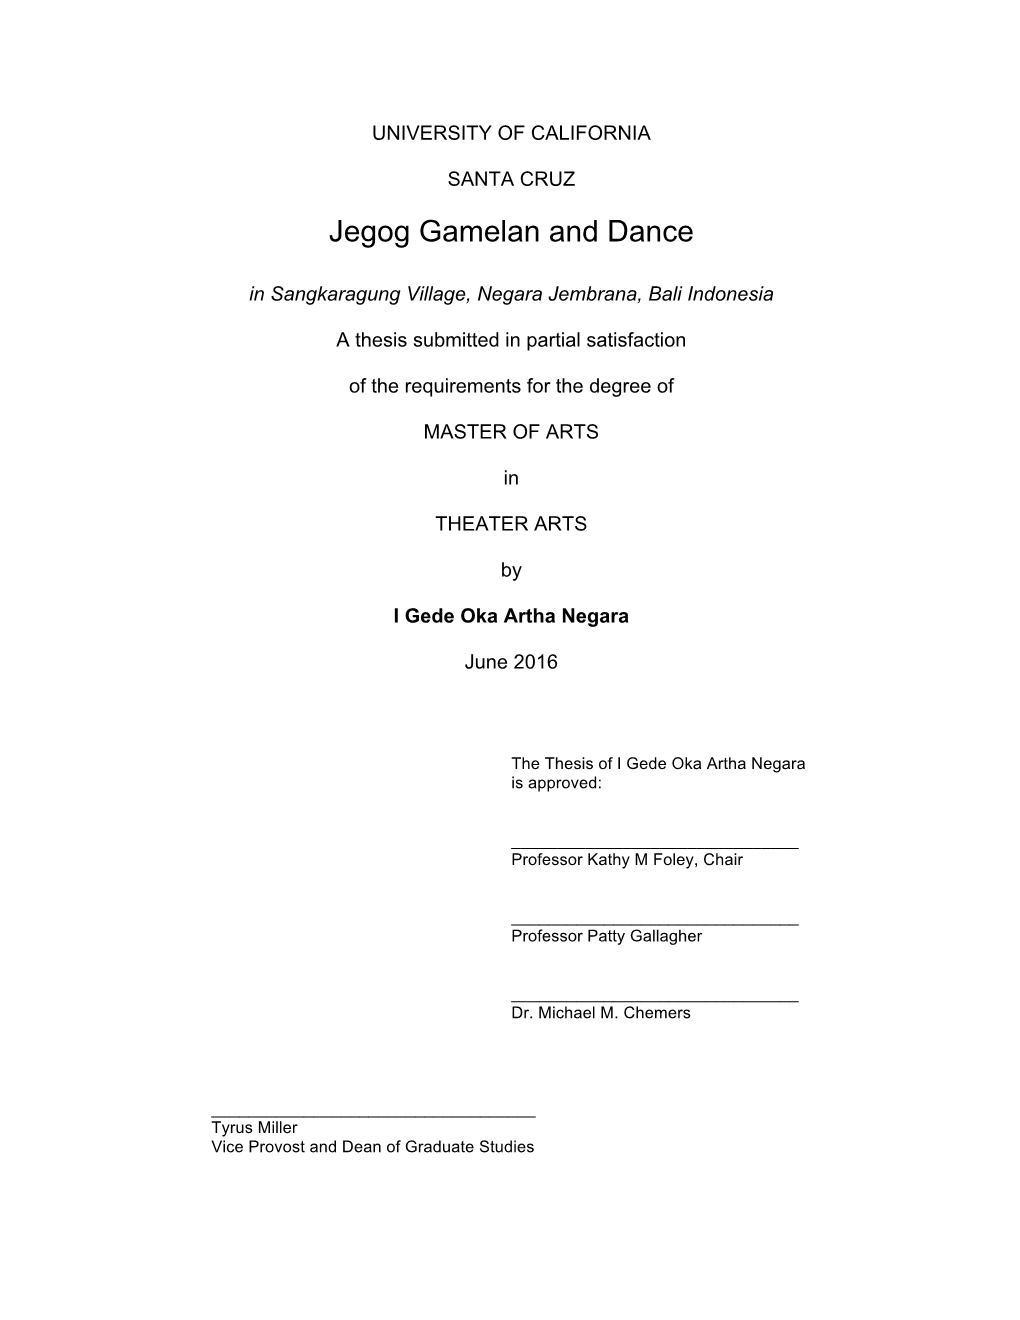 Jegog Gamelan and Dance